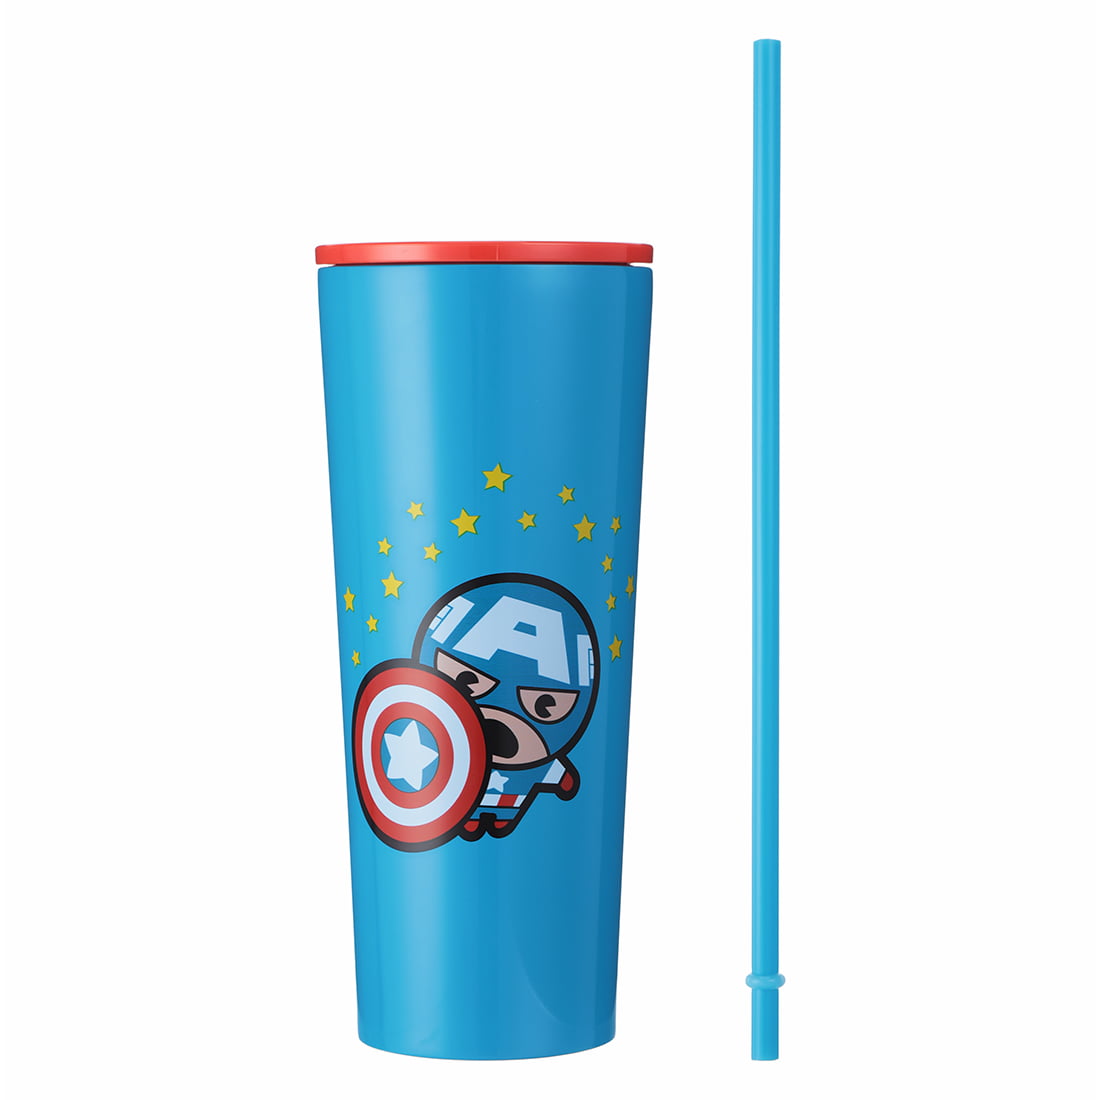 Captain America Travel Soup Mug - Entertainment Earth